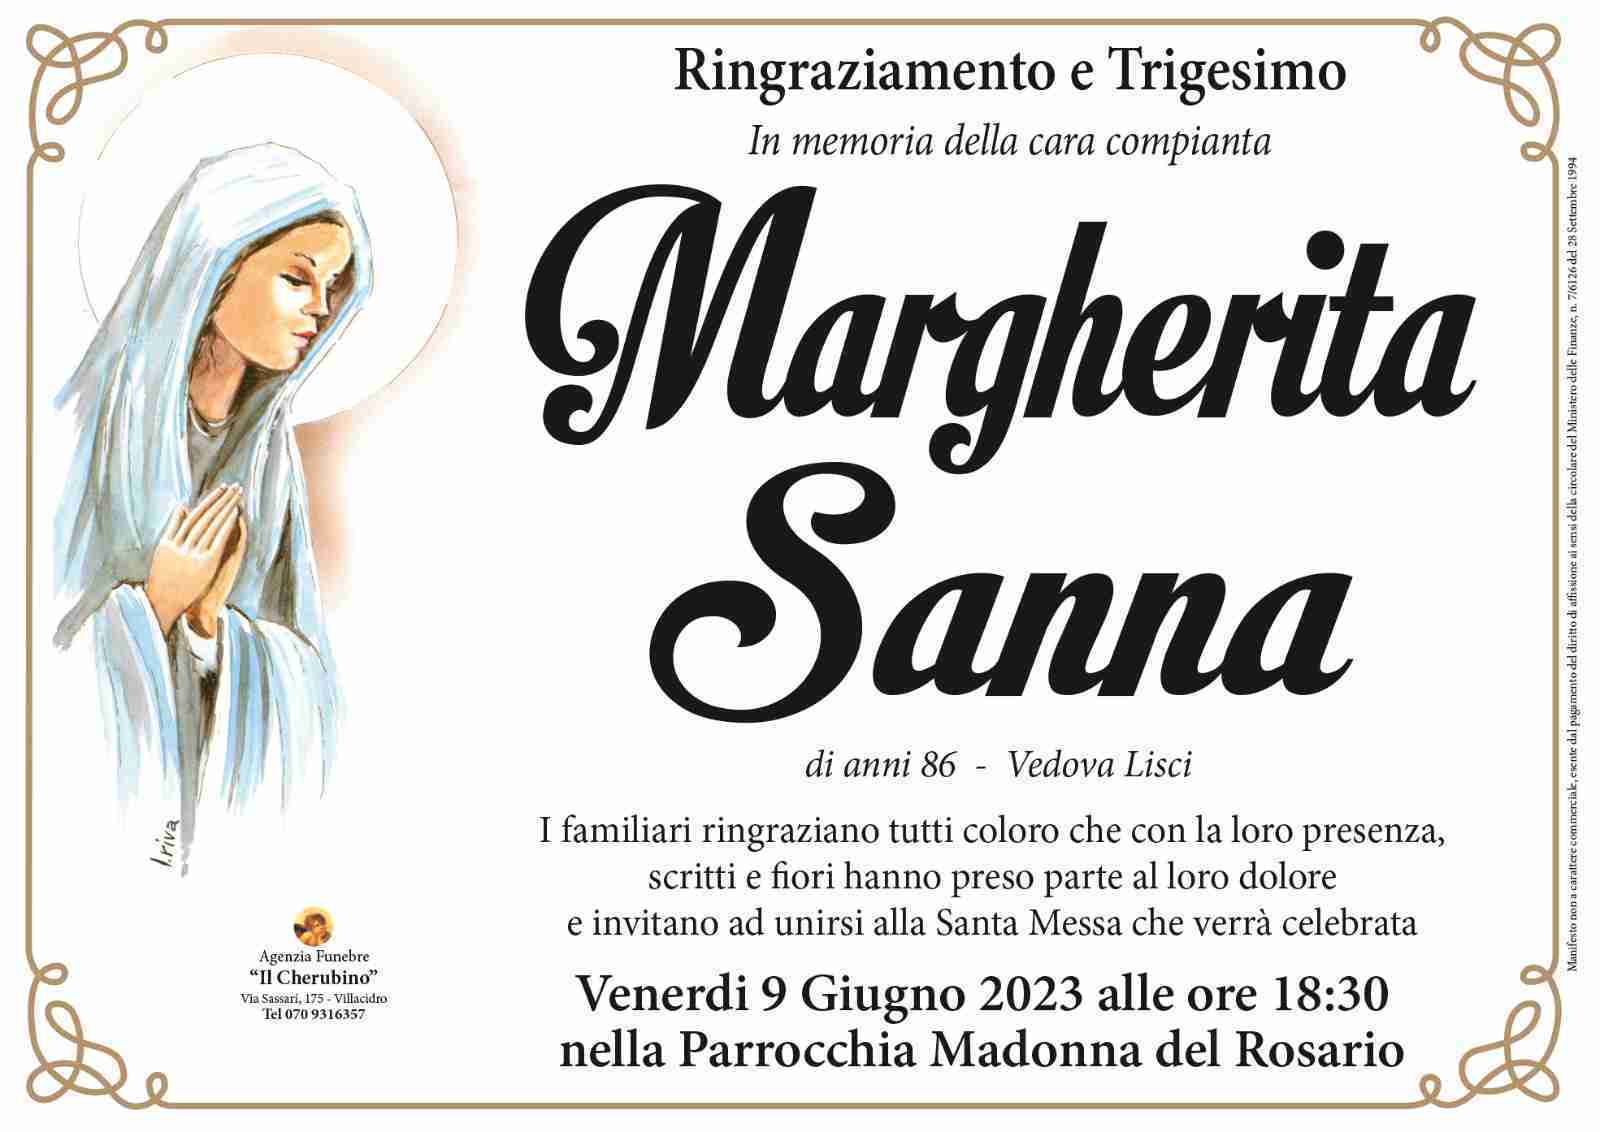 Margherita Sanna